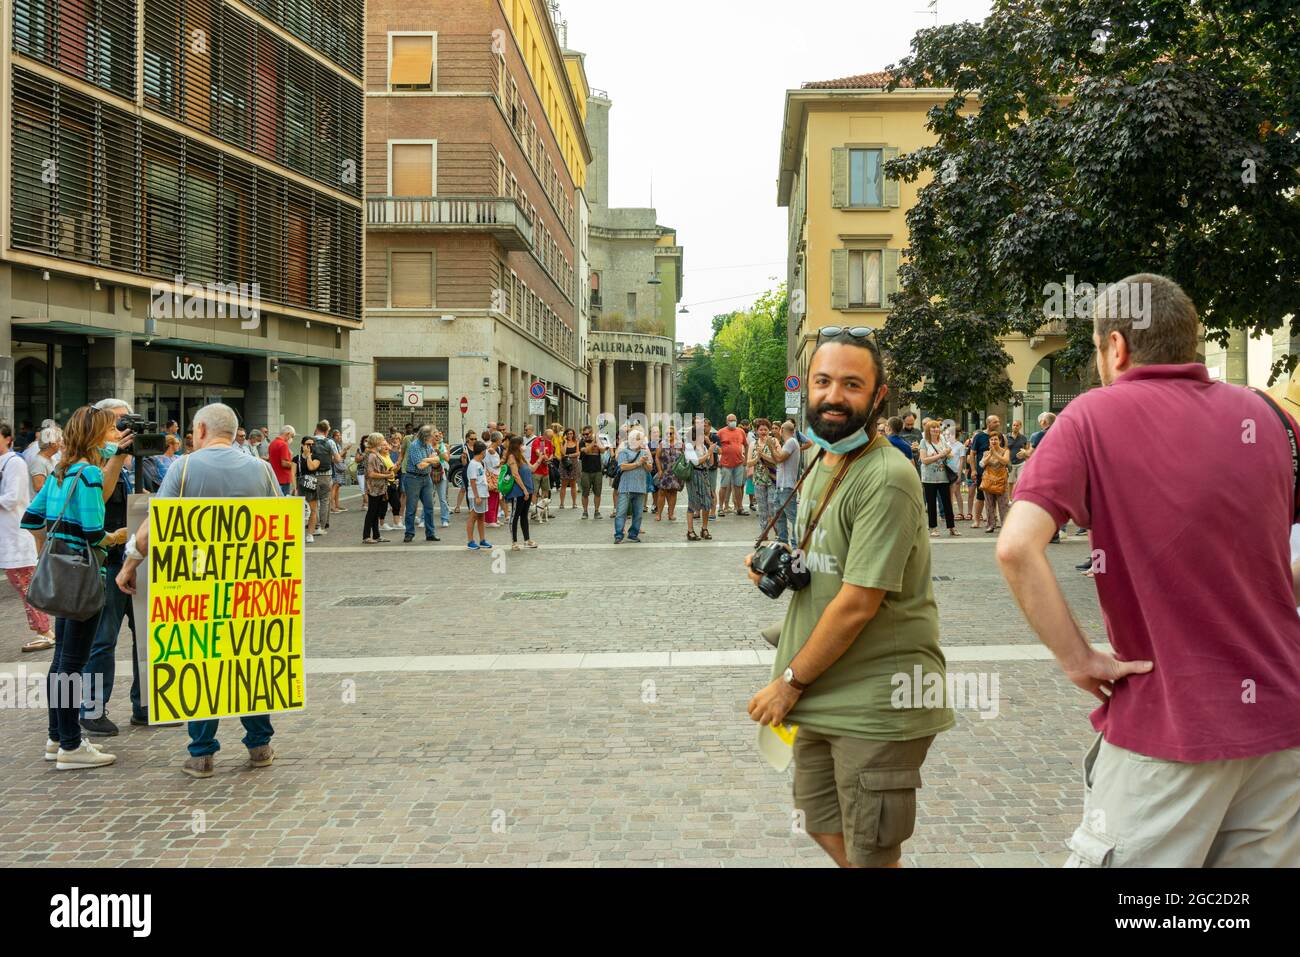 CREMON, ITALIE - 24 juillet 2021 : une foule de personnes protestant contre la vaccination Covid-19 à Cremon, Italie Banque D'Images